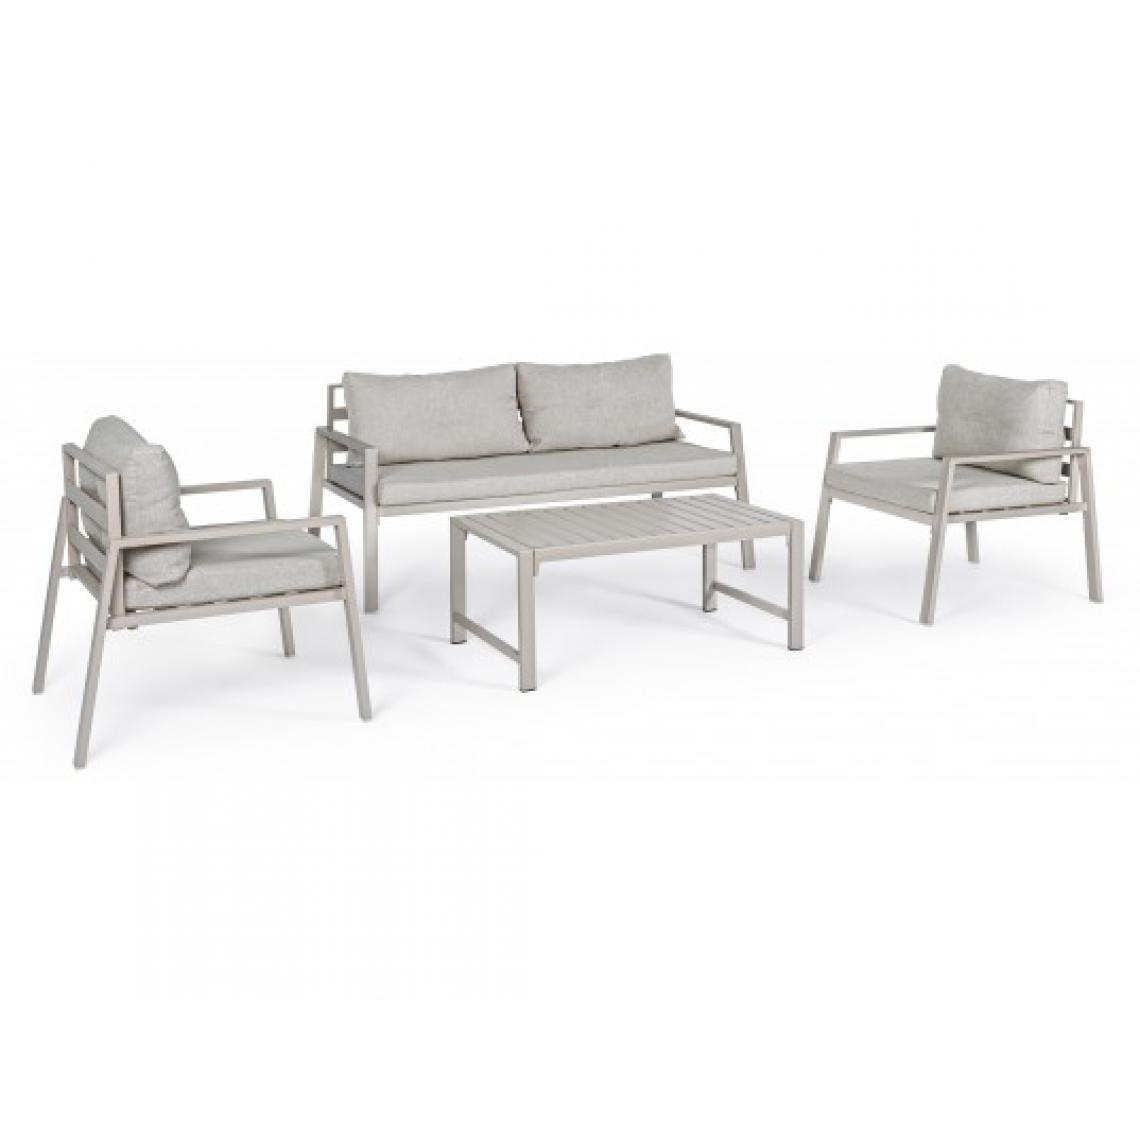 Bizzotto - Canapé extérieur Lorillard canapé + 2 fauteuils + table IVOIRE - Fauteuil de jardin